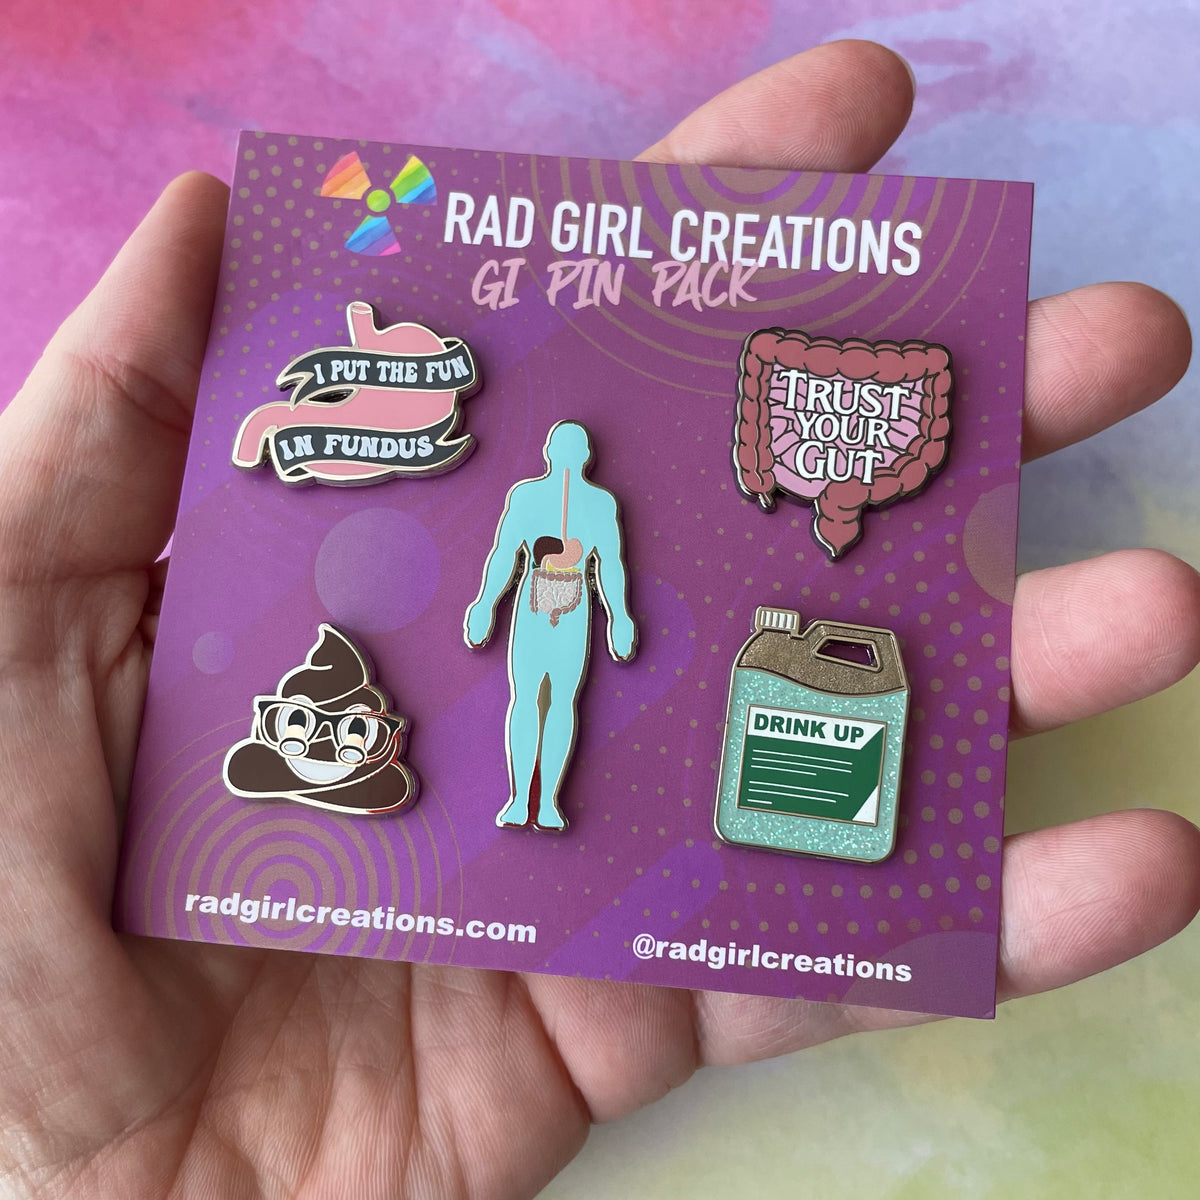 GI Pin Pack - Rad Girl Creations Medical enamel pins